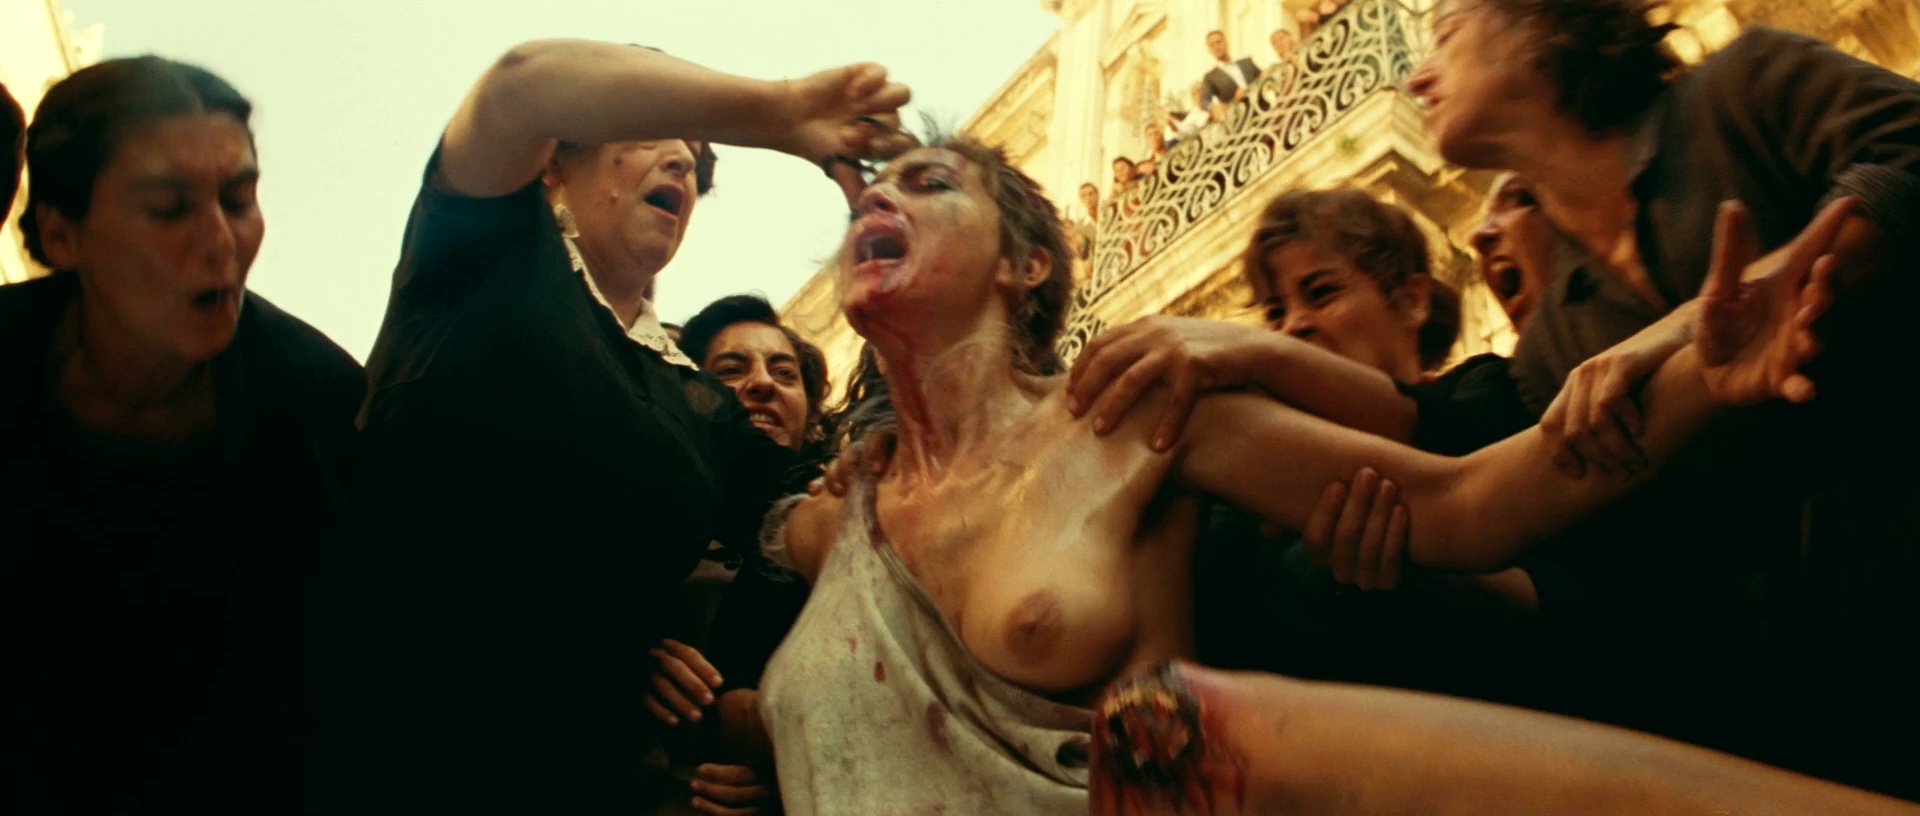 Лучшие Итальянские Фильмы С Изнасилованием Порно